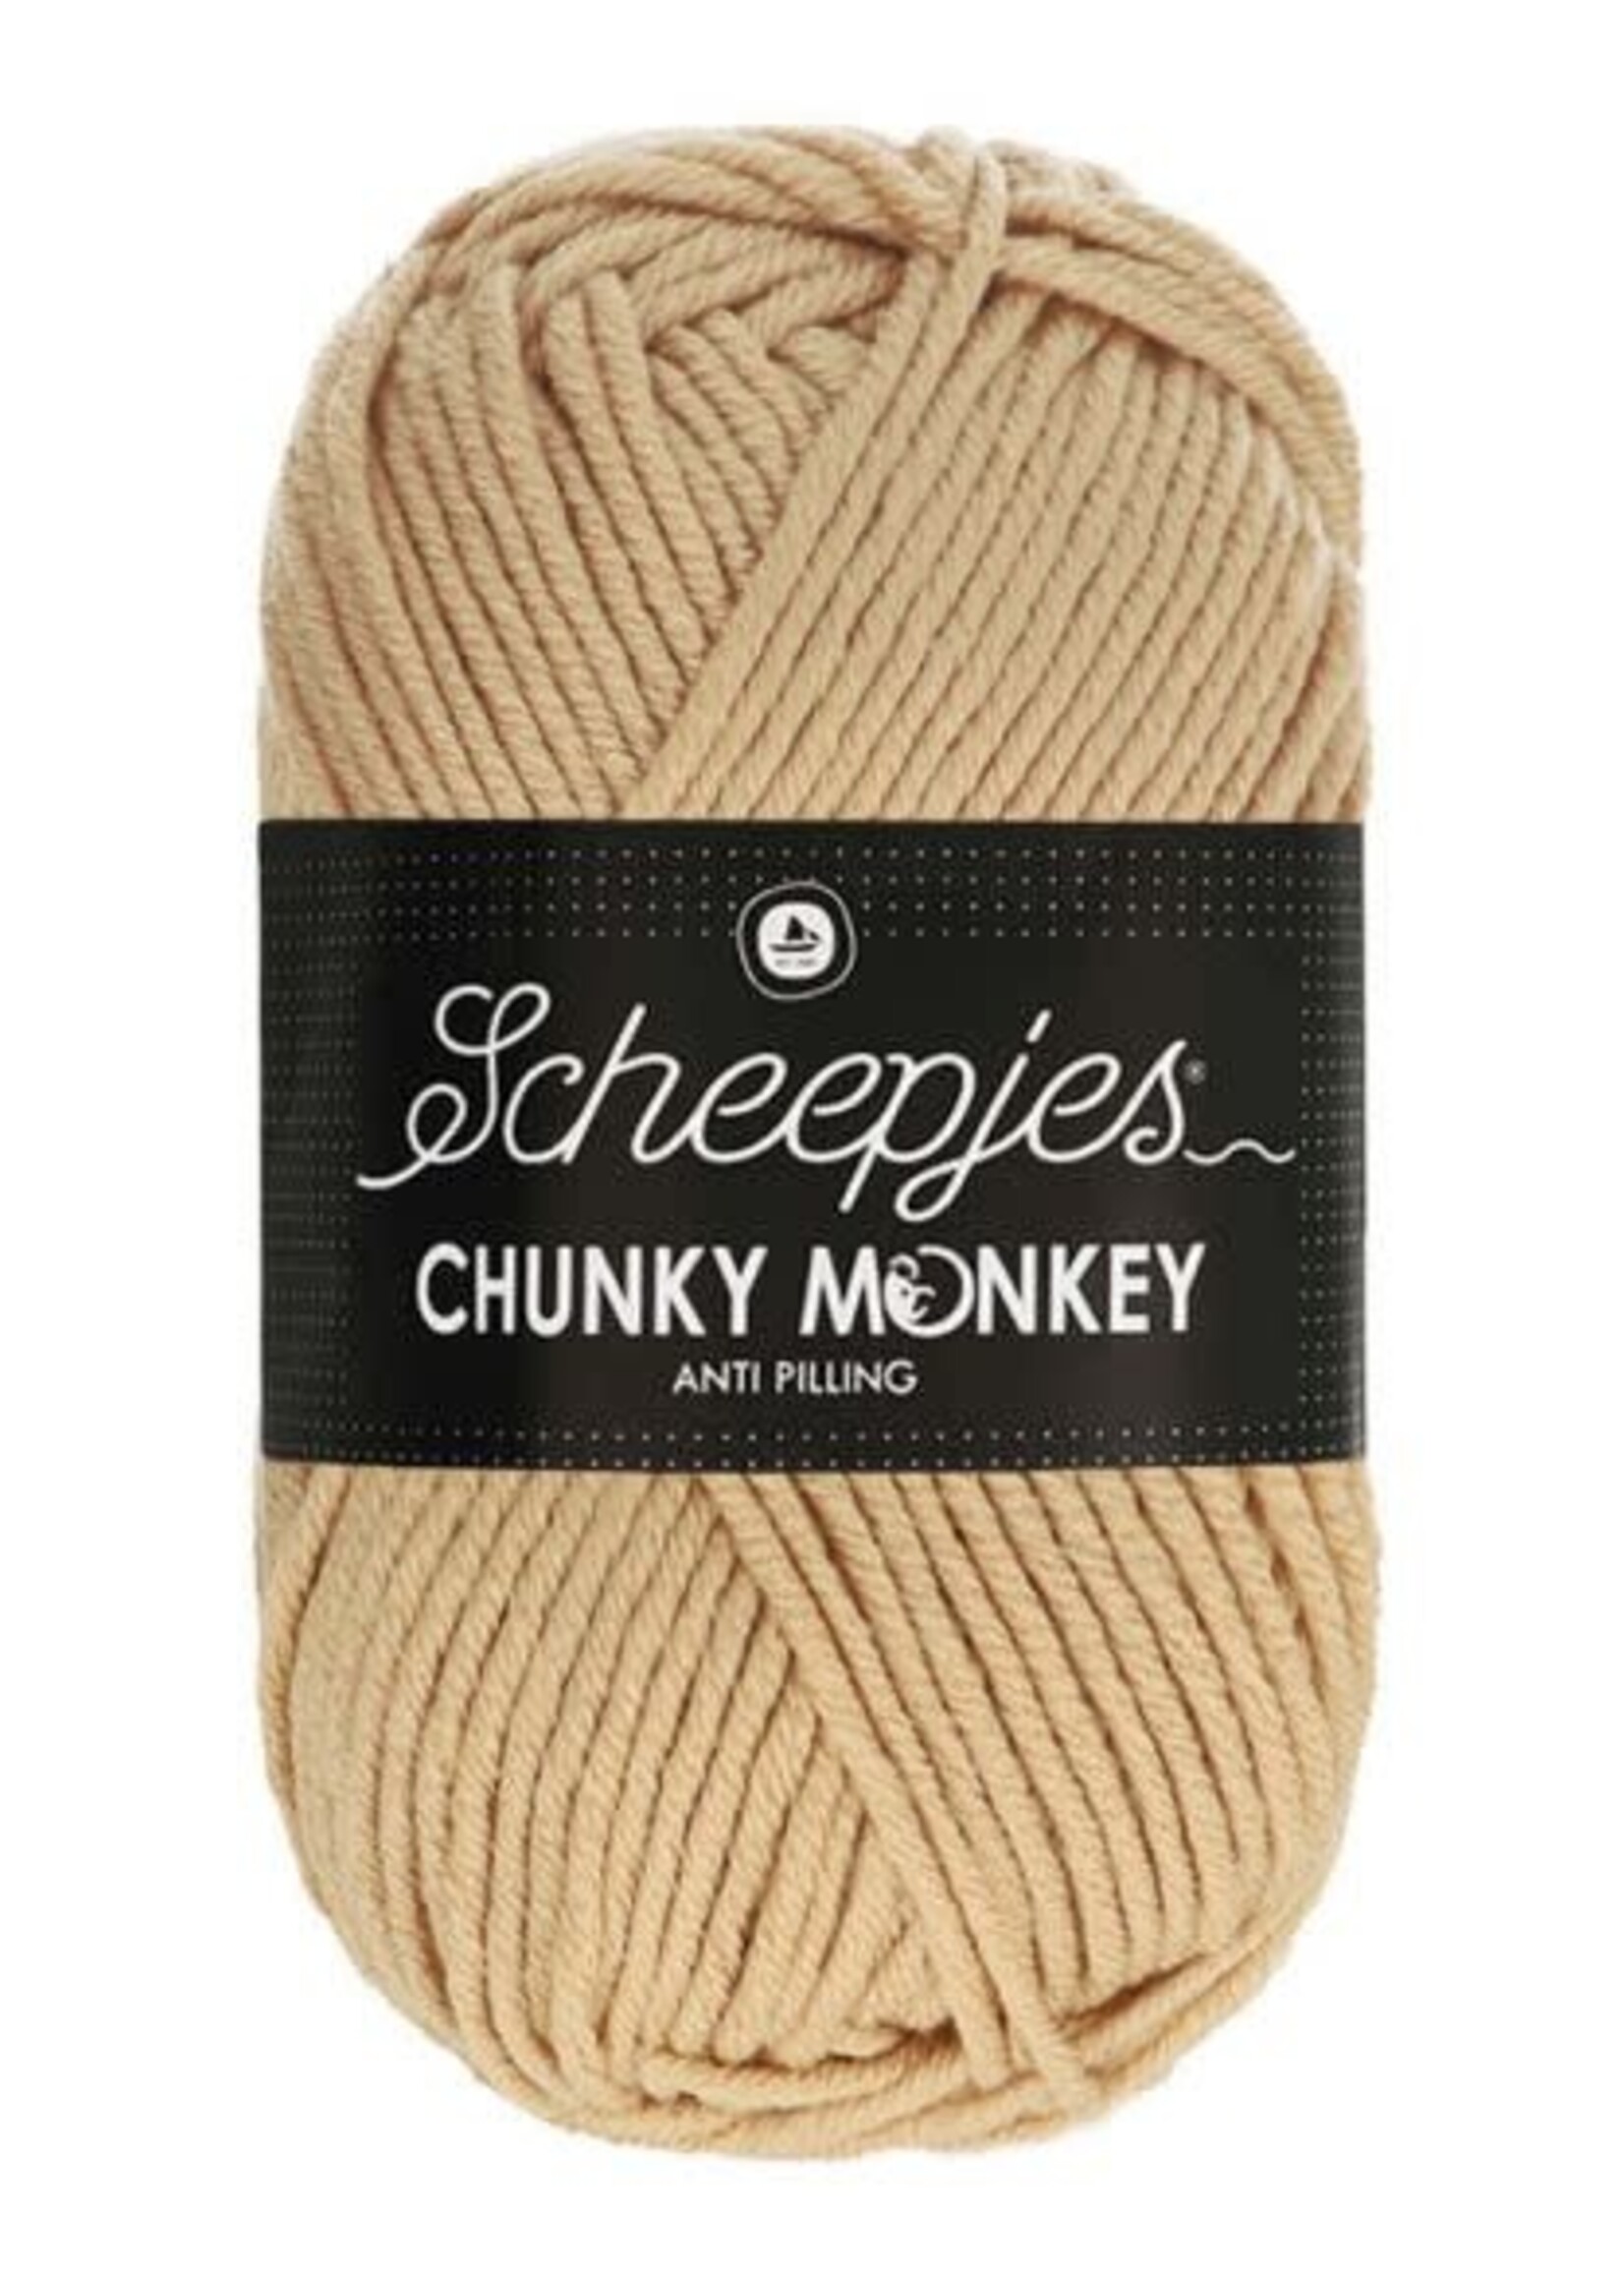 Scheepjes Chunky Monkey -  Scheepjes -1710 Camel